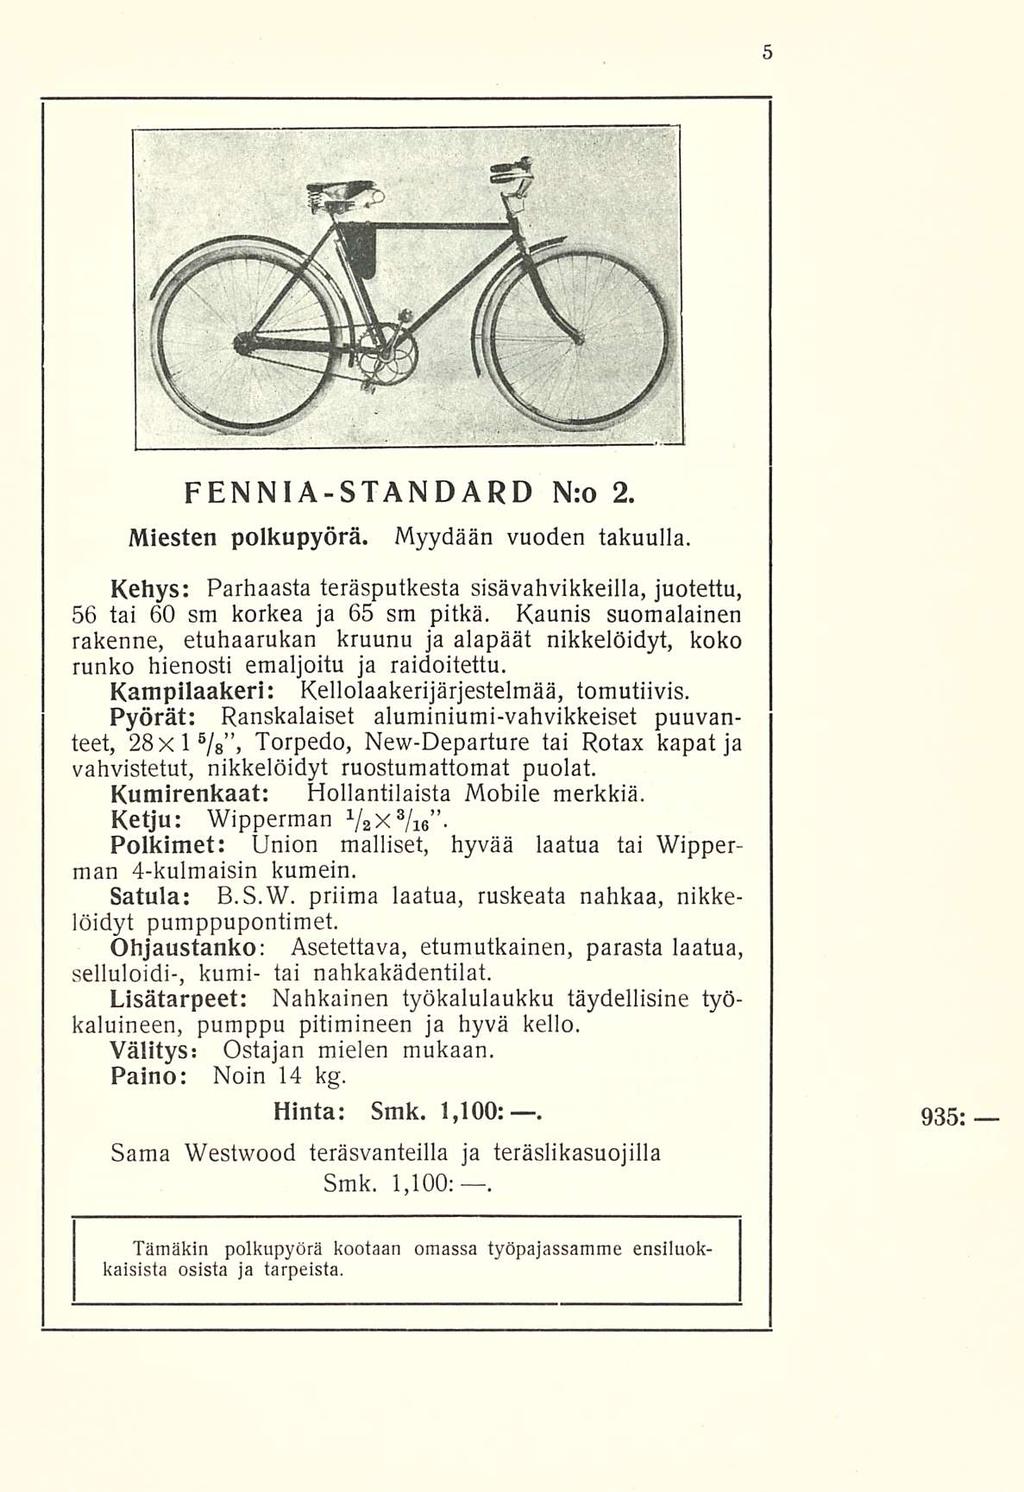 FENNIA-STANDARD N:o 2. Miesten polkupyörä. Myydään vuoden takuulla. Kehys: Parhaasta teräsputkesta sisävahvikkeilla, juotettu, 56 tai 60 sm korkea ja 65 sm pitkä.